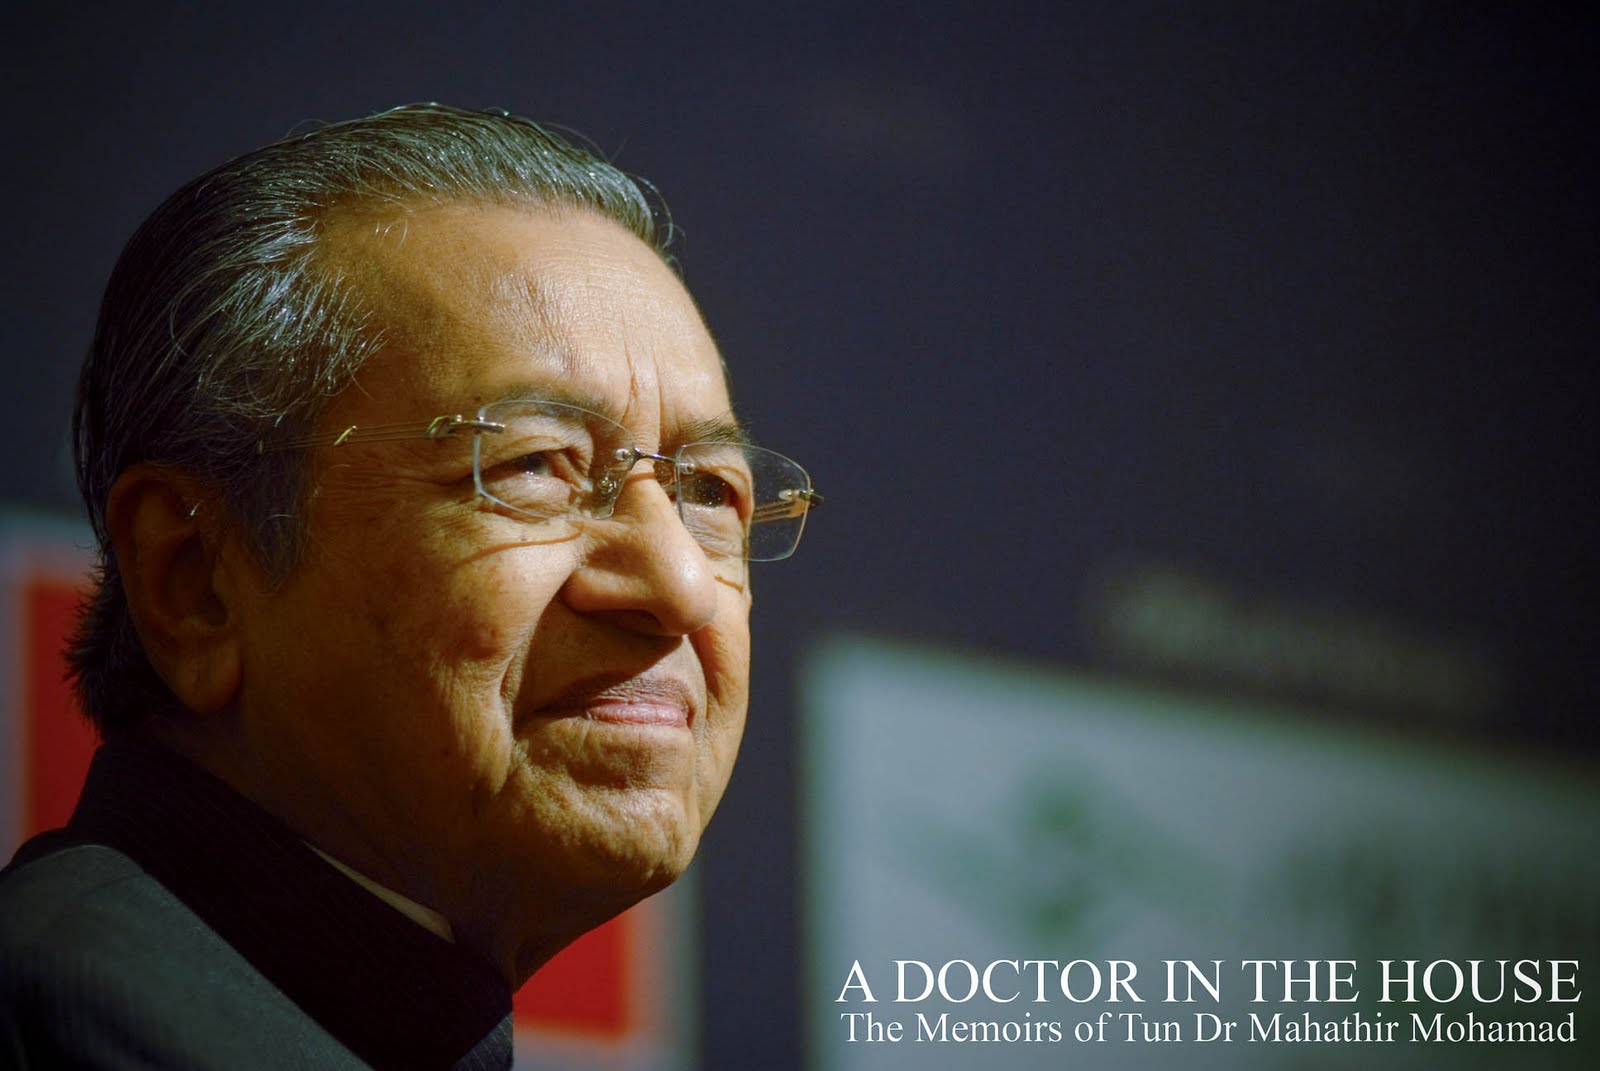 Yumni Harun: Tun Dr. Mahathir bin Mohamad